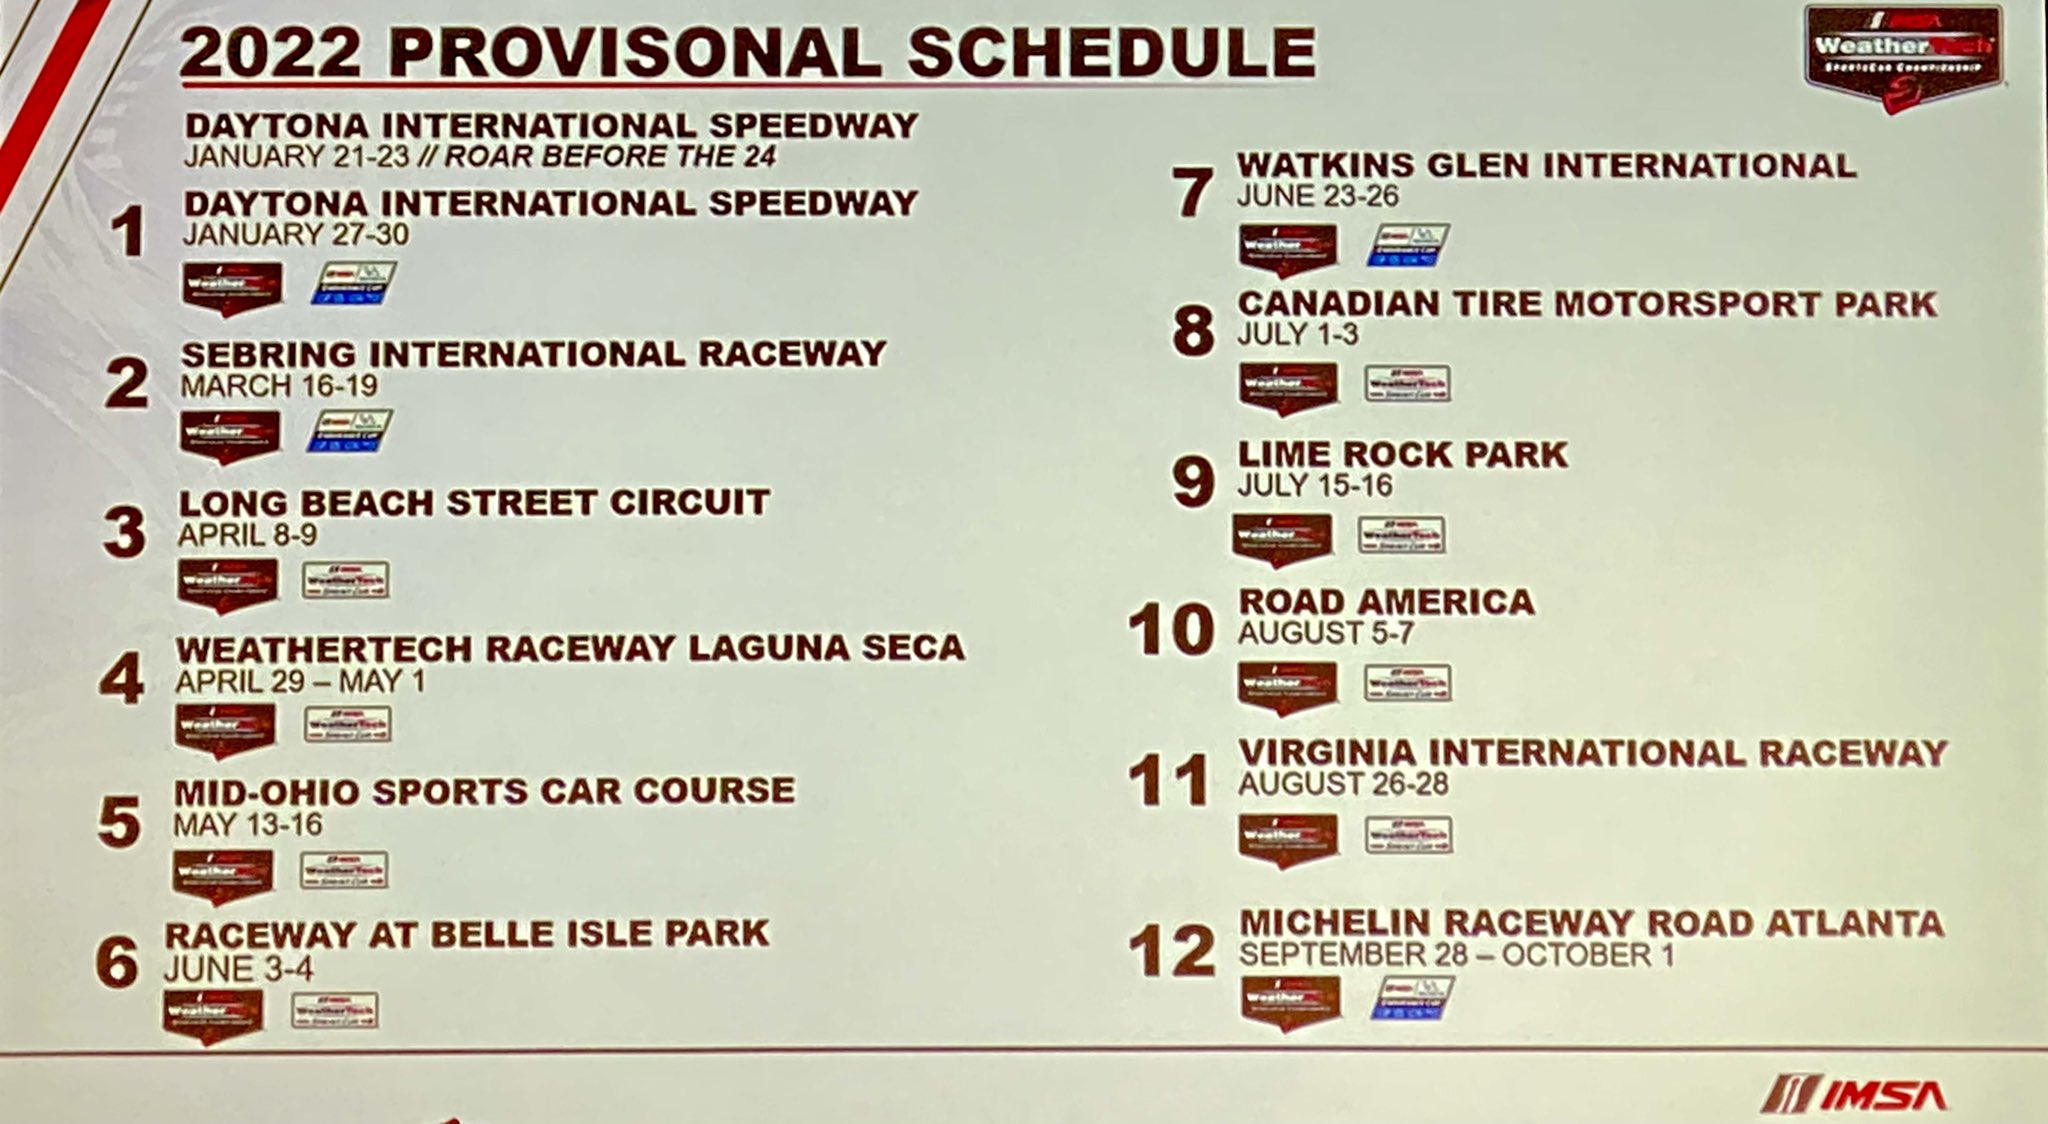 Imsa Racing Schedule 2022 2022 Provisional Imsa Schedule Announced - Midenginecorvetteforum.com